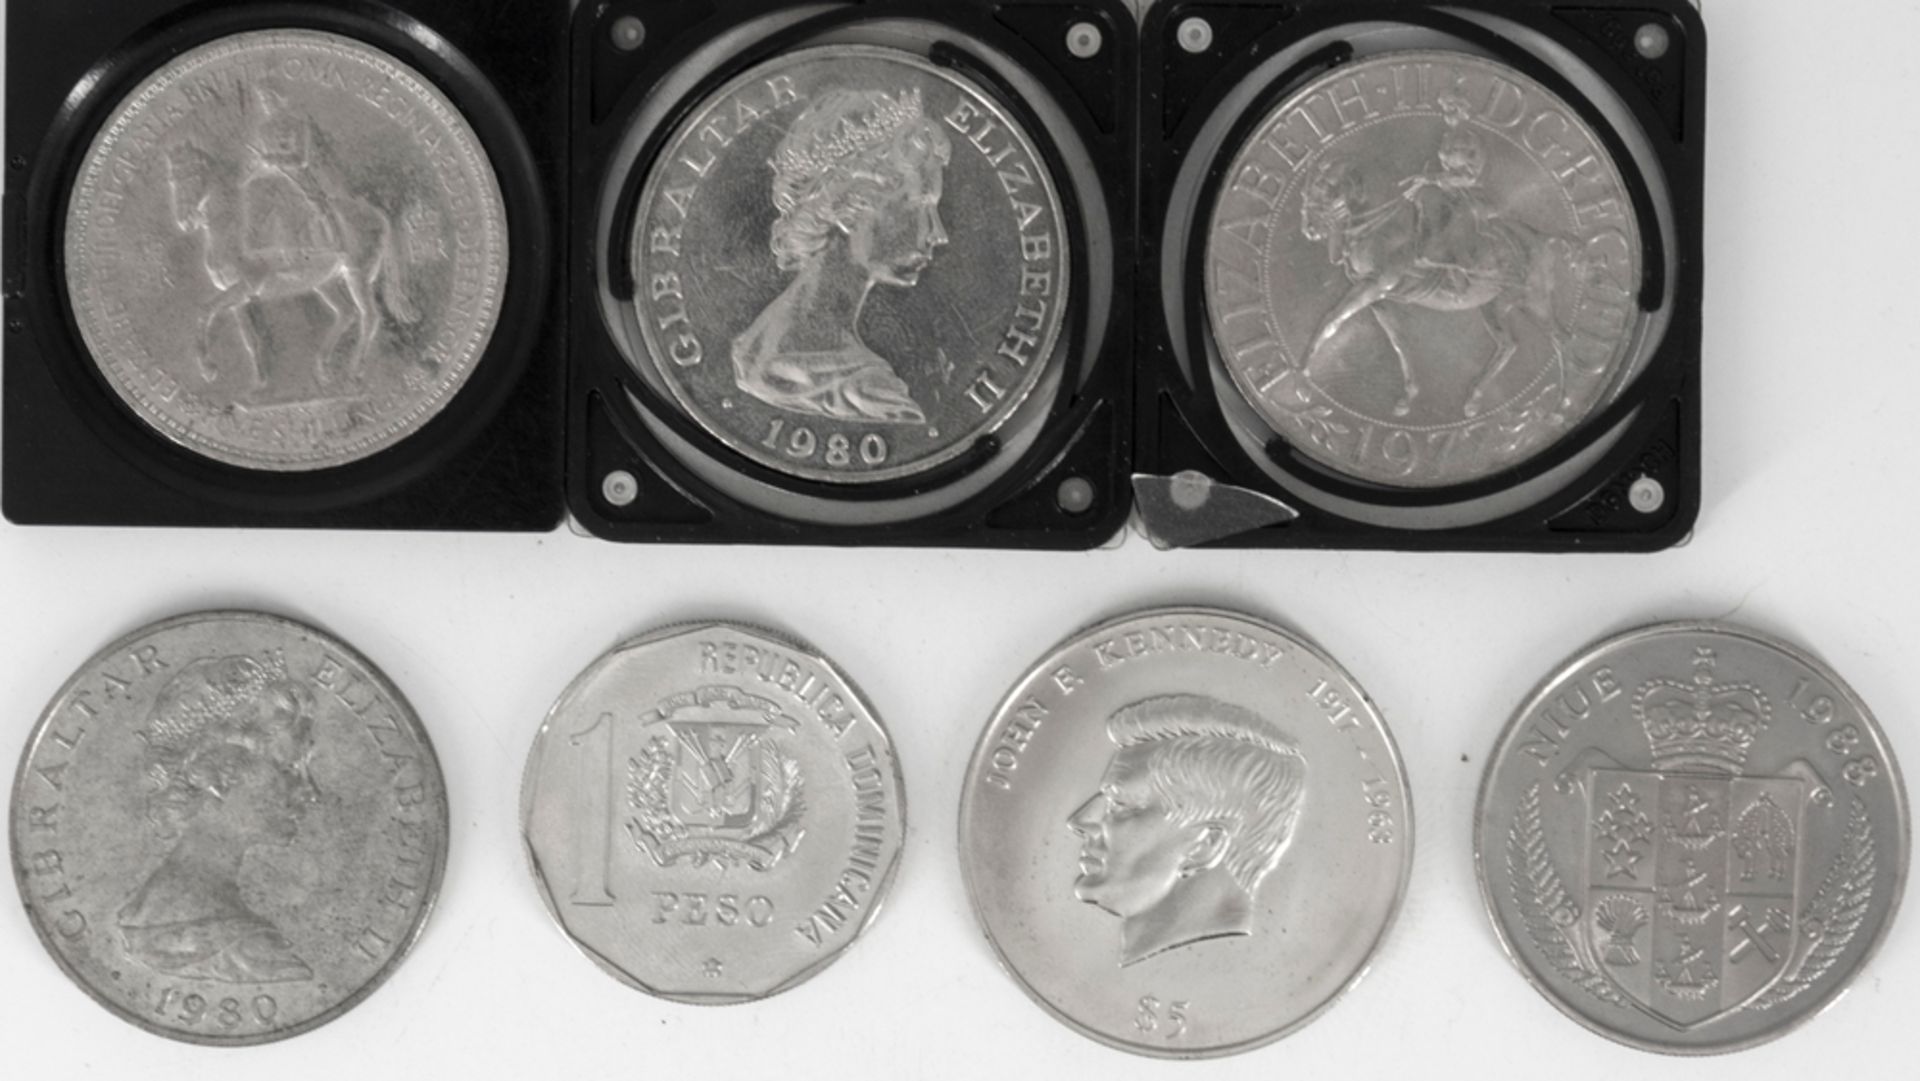 Lot Münzen aus Großbritannien, Niue, Dominikanische Republik und Liberia. Cu/Ni. Erhaltung: stgl. - Bild 2 aus 2